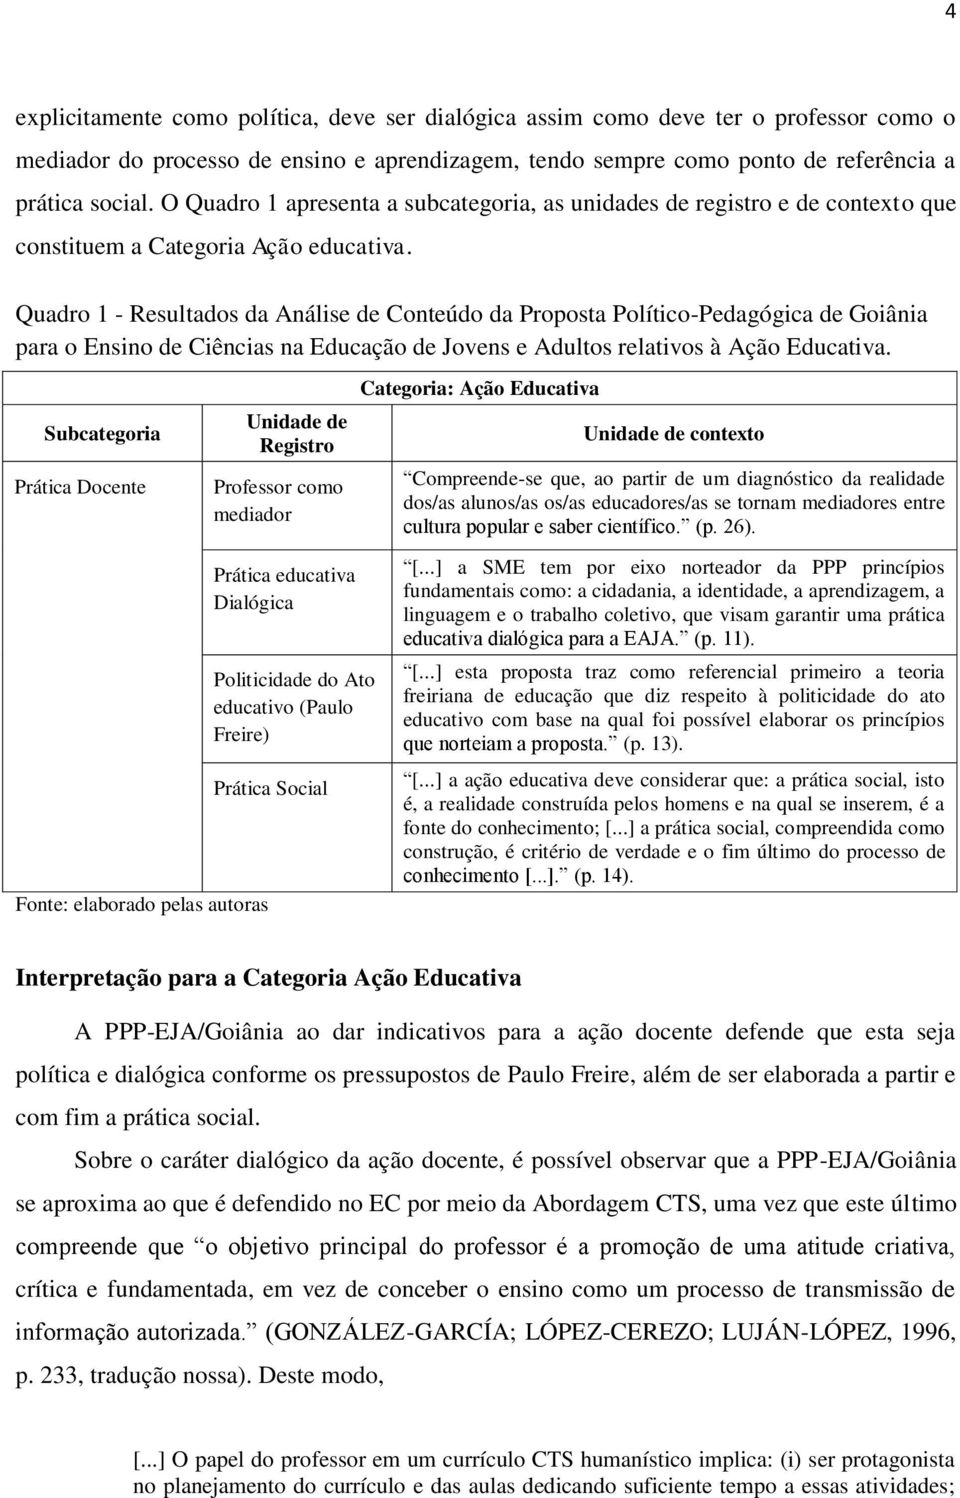 Quadro 1 - Resultados da Análise de Conteúdo da Proposta Político-Pedagógica de Goiânia para o Ensino de Ciências na Educação de Jovens e Adultos relativos à Ação Educativa.